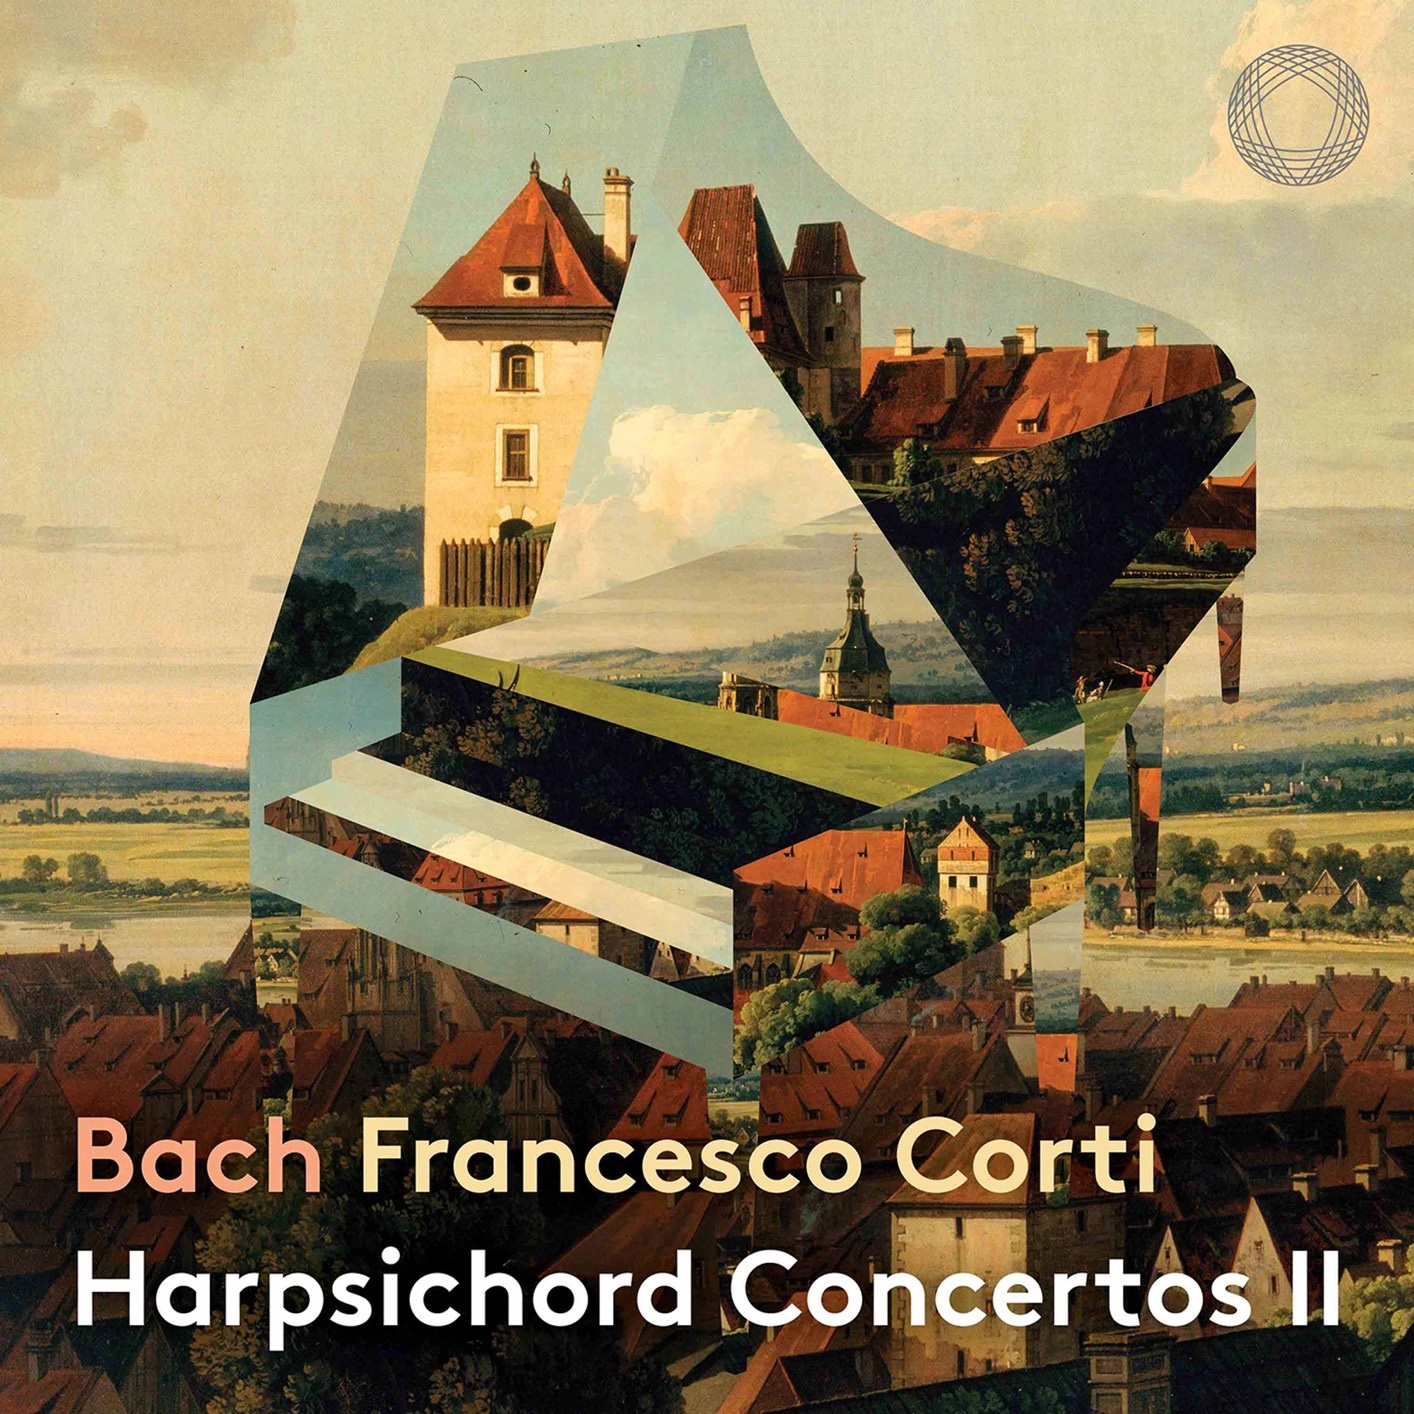 Bach: Harpsichord Concertos II. Francesco Corti; Il Pomo d’Oro